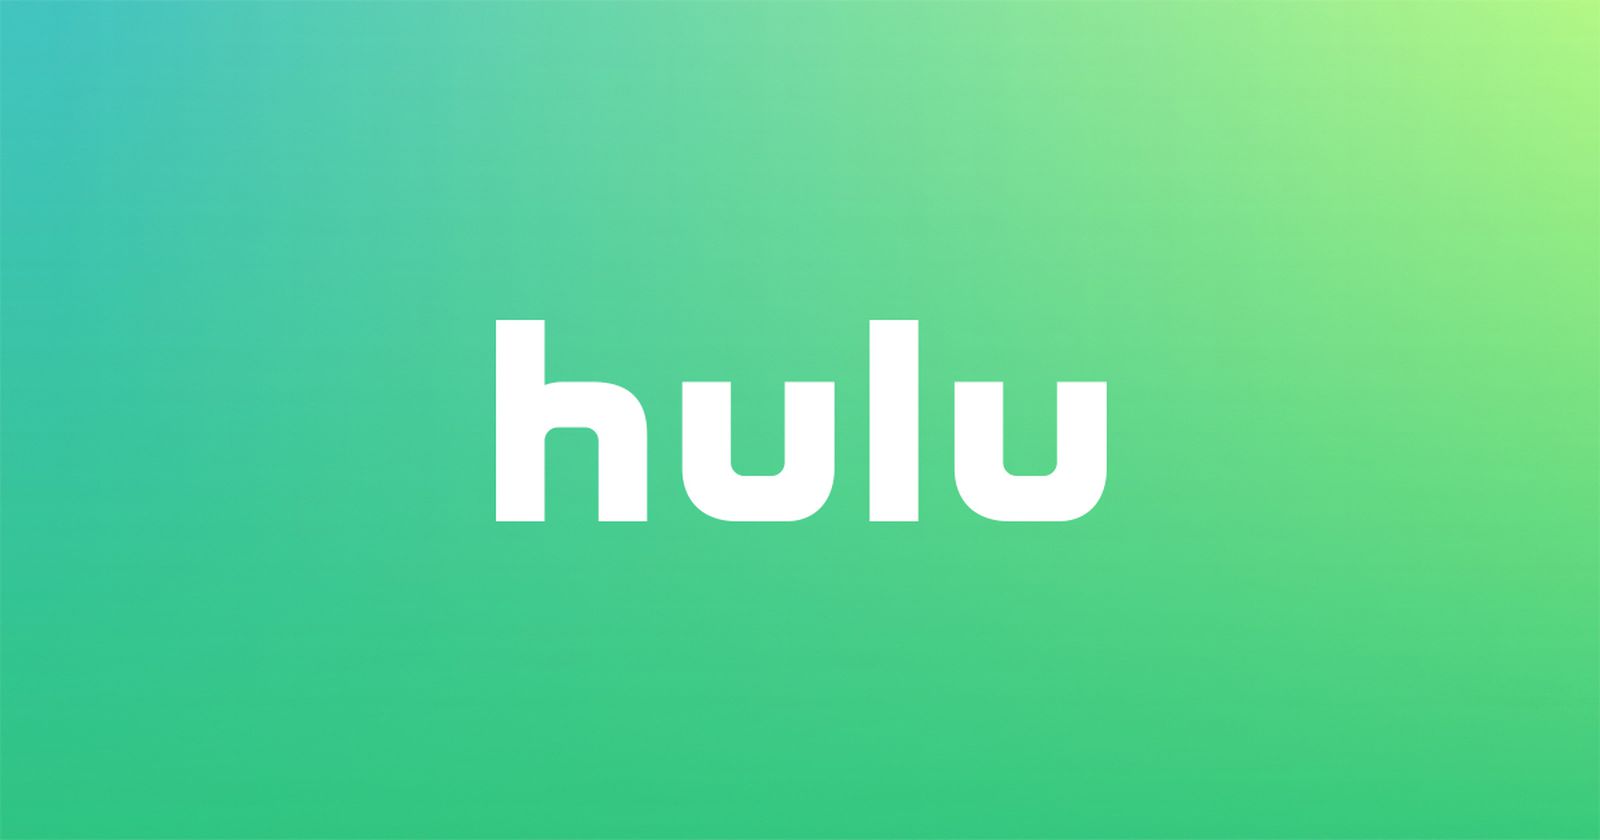 hulu logo 2019.jpg